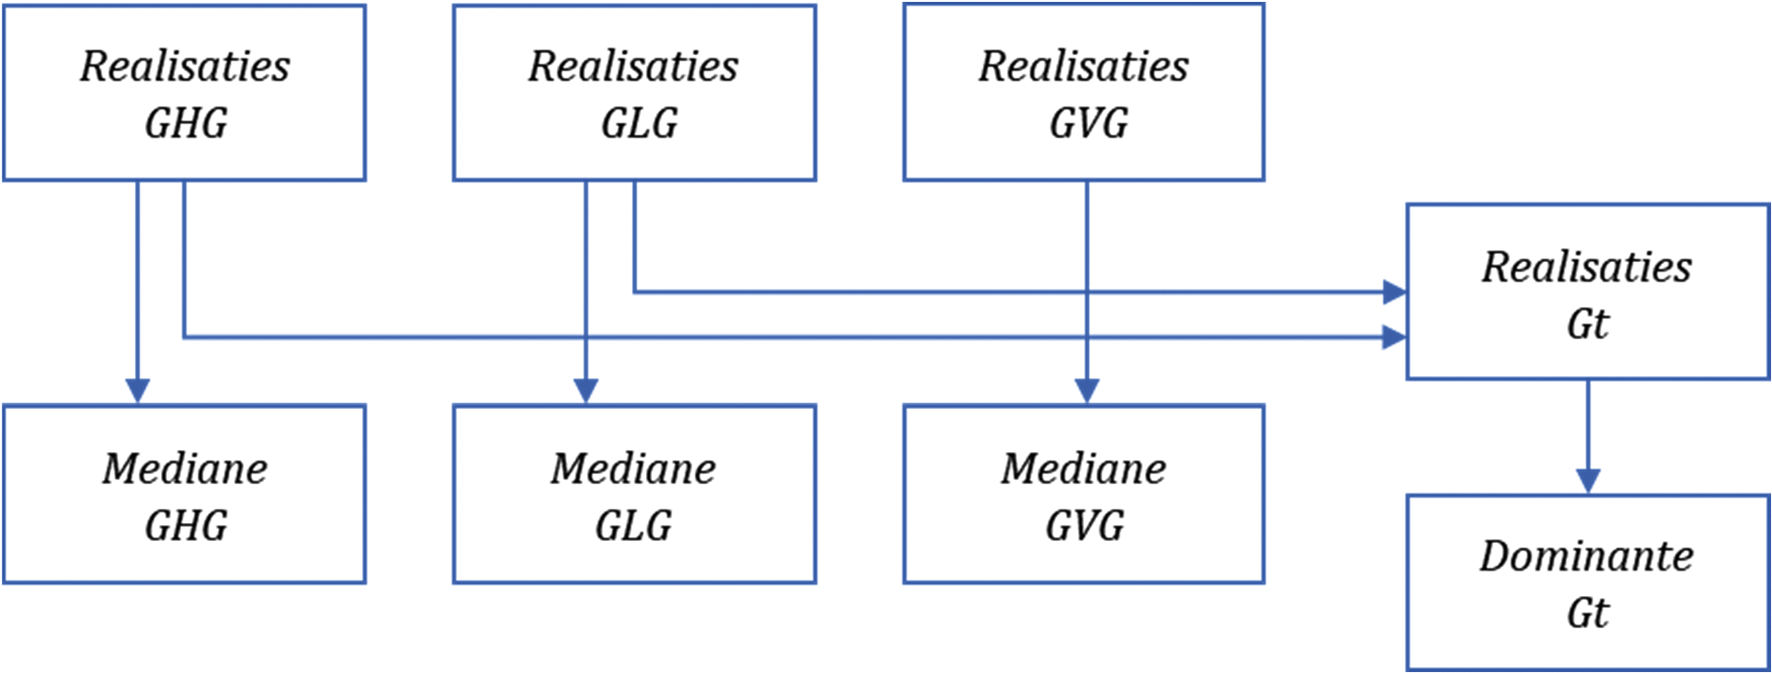 Figuur 1. Samenhang tussen realisaties en best estimate van GxG en Gt.